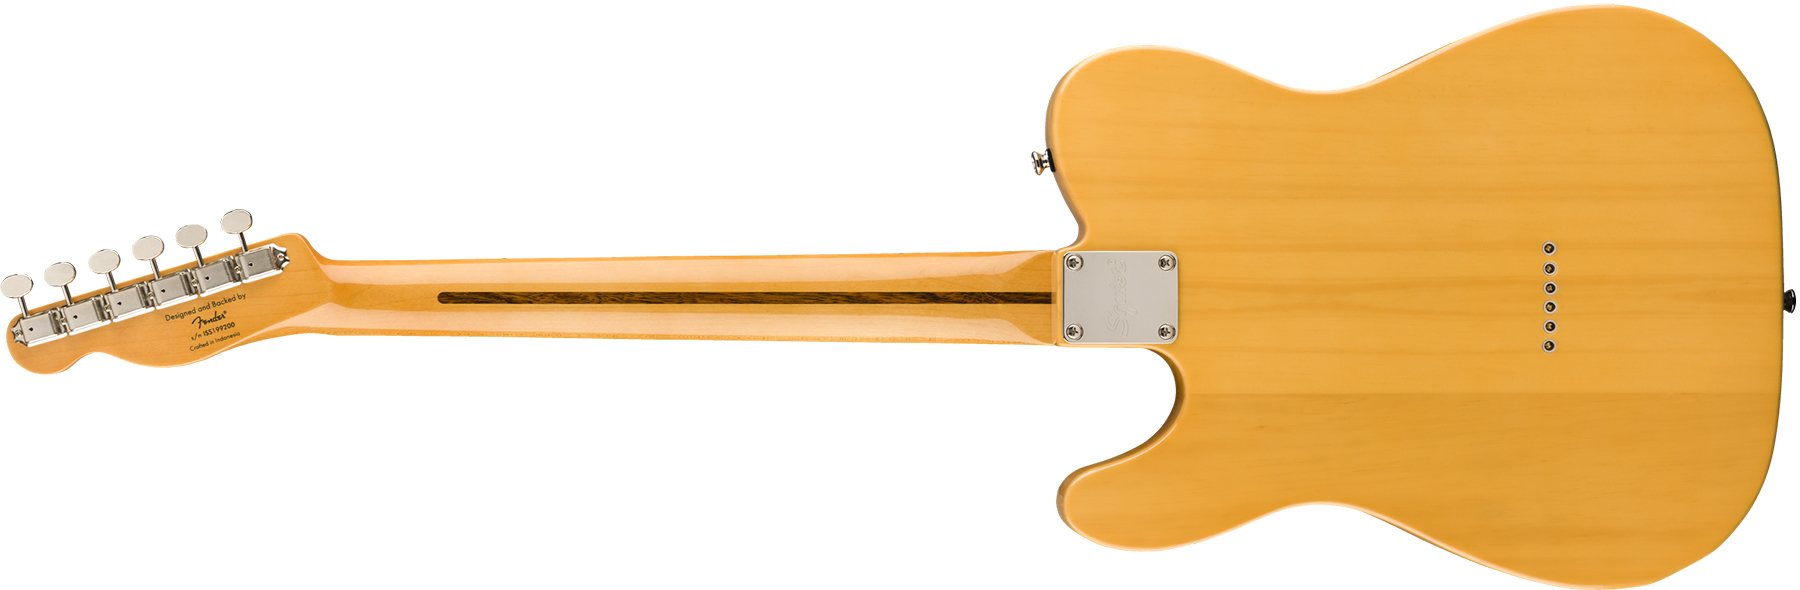 Squier Tele '50s Classic Vibe 2019 Mn - Butterscotch Blonde - Guitarra eléctrica con forma de tel - Variation 1